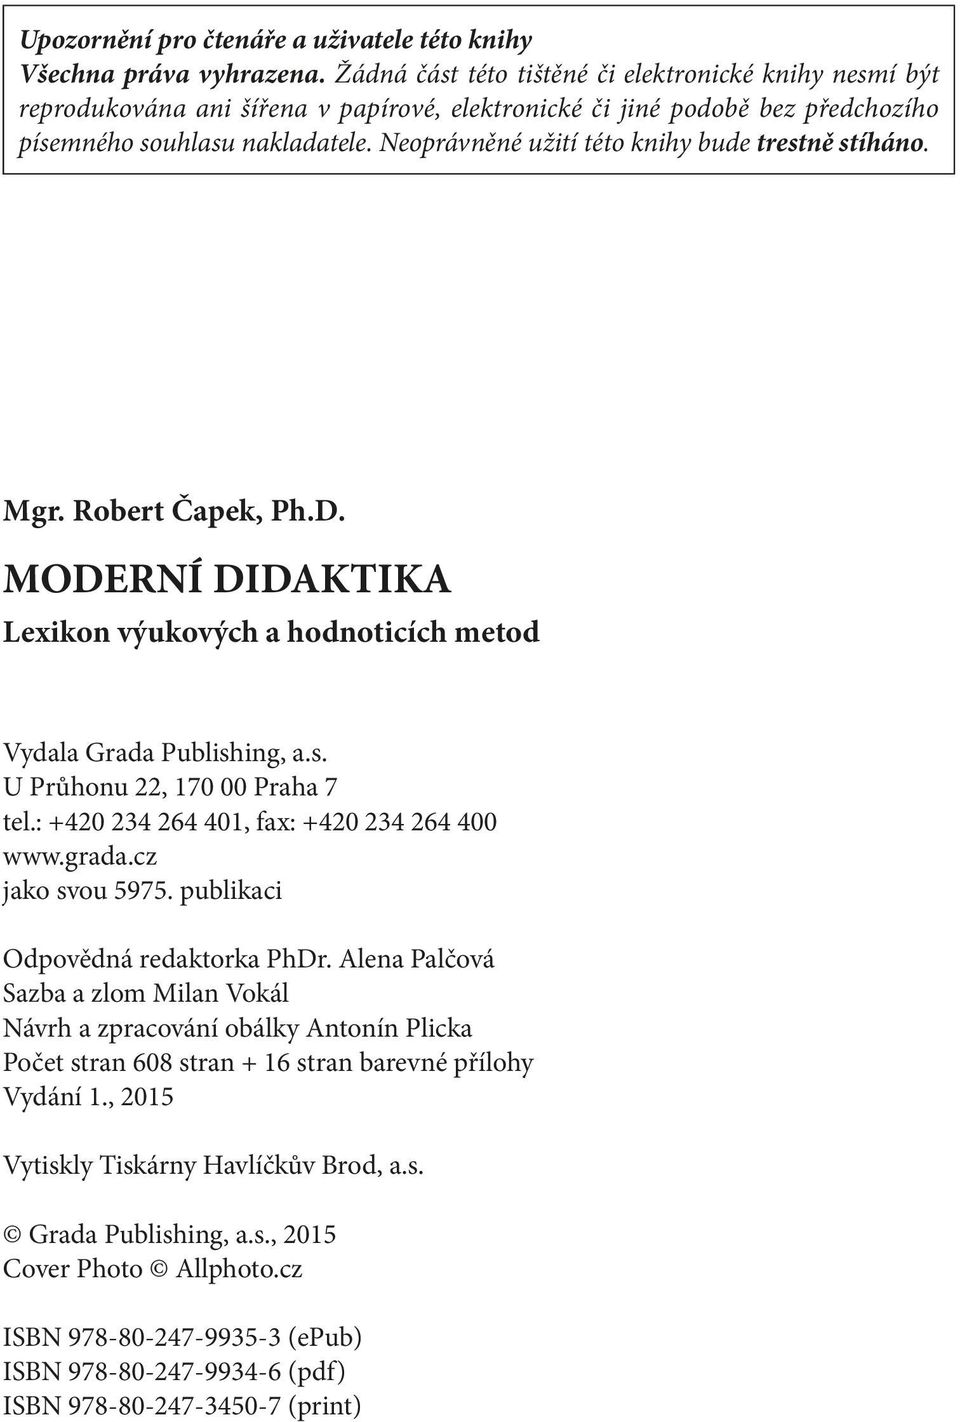 Moderní didaktika MODERNÍ DIDAKTIKA. Robert Čapek. ROBERT ČAPEK - PDF  Stažení zdarma